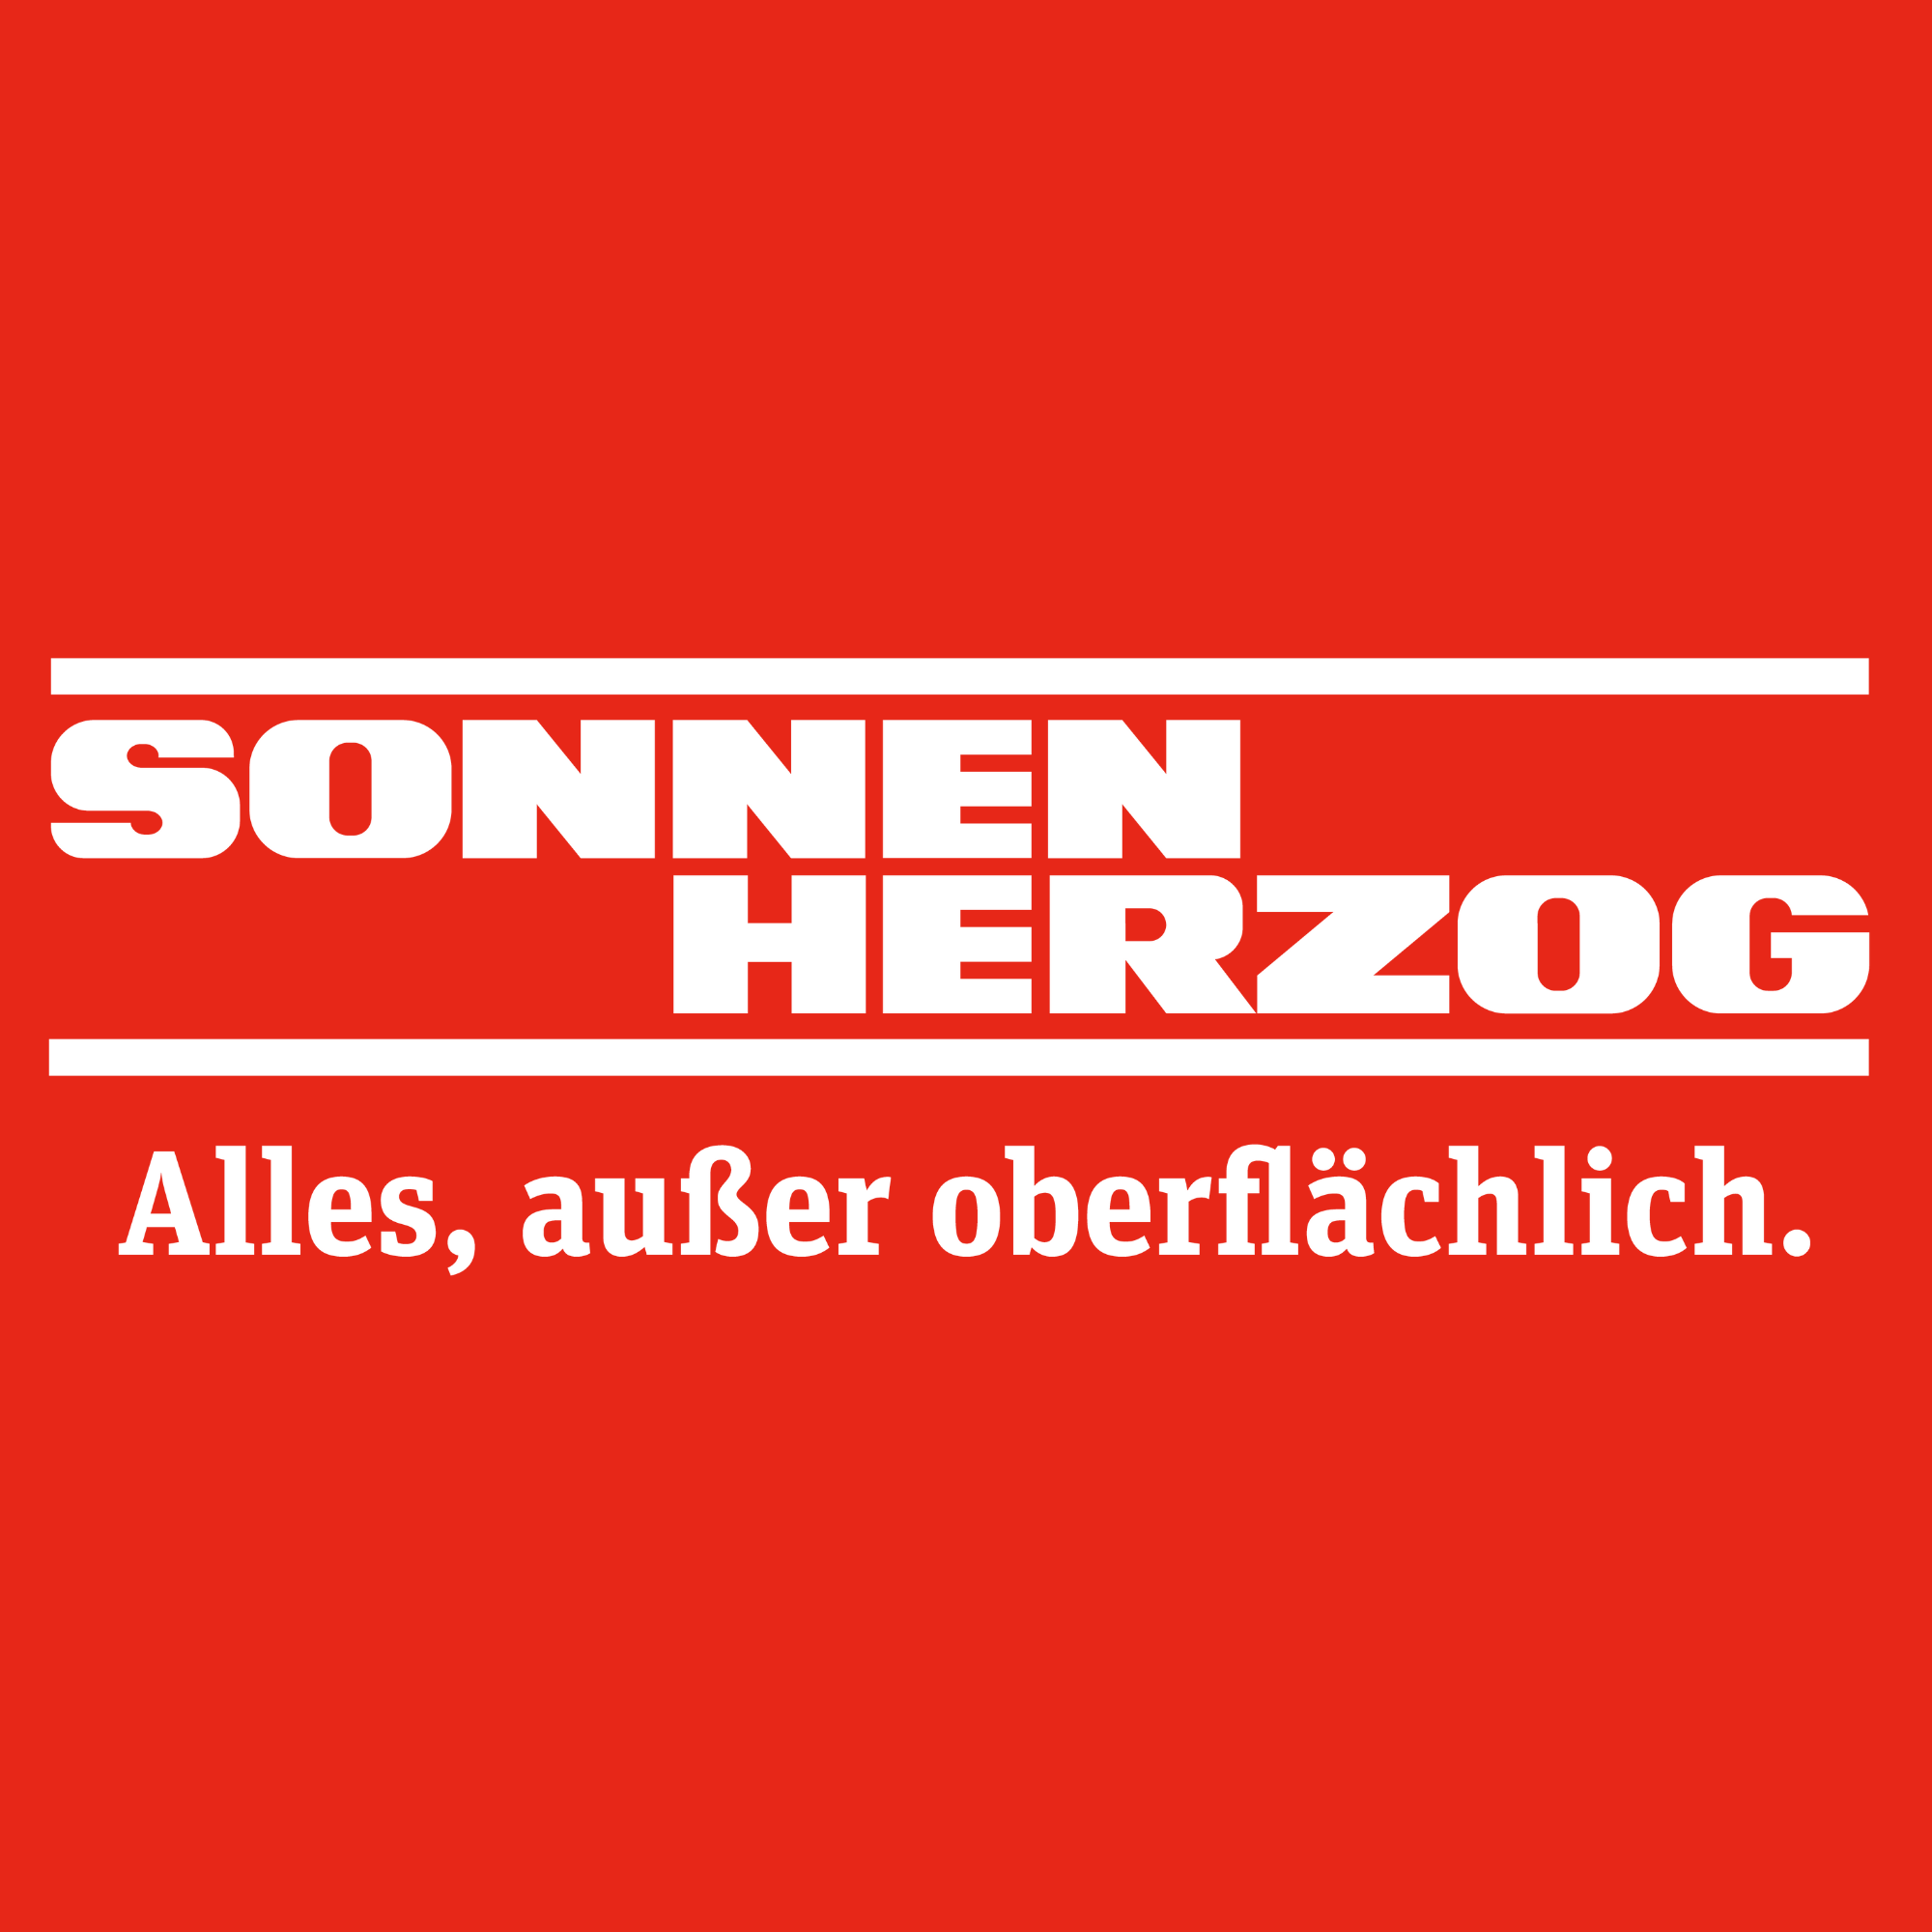 Sonnen Herzog GmbH & Co. KG in Mönchengladbach - Logo